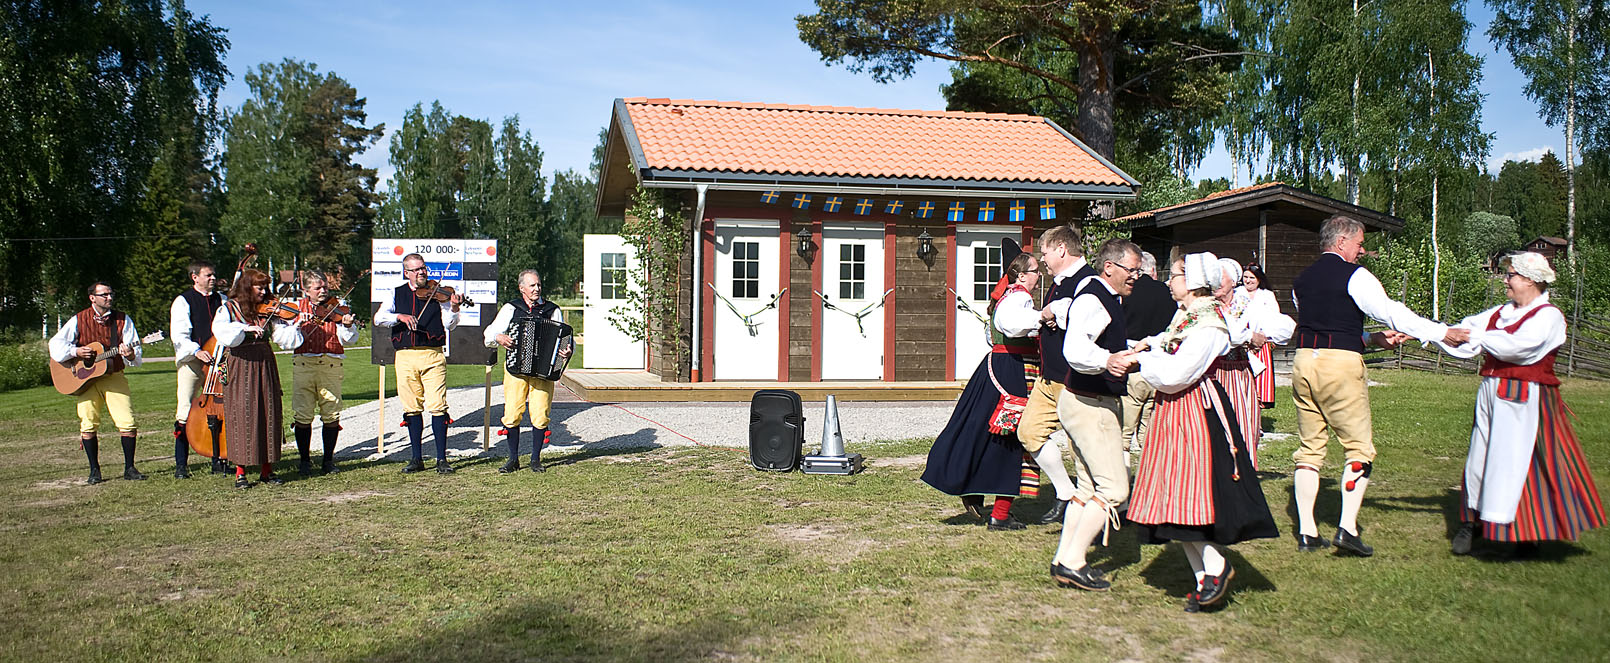 Folkdansen med Leksands folkdanslag och Tngerpojkarna med Karin. Invigningen av toalettbyggnaden vid Strandpaviljongen 2016.